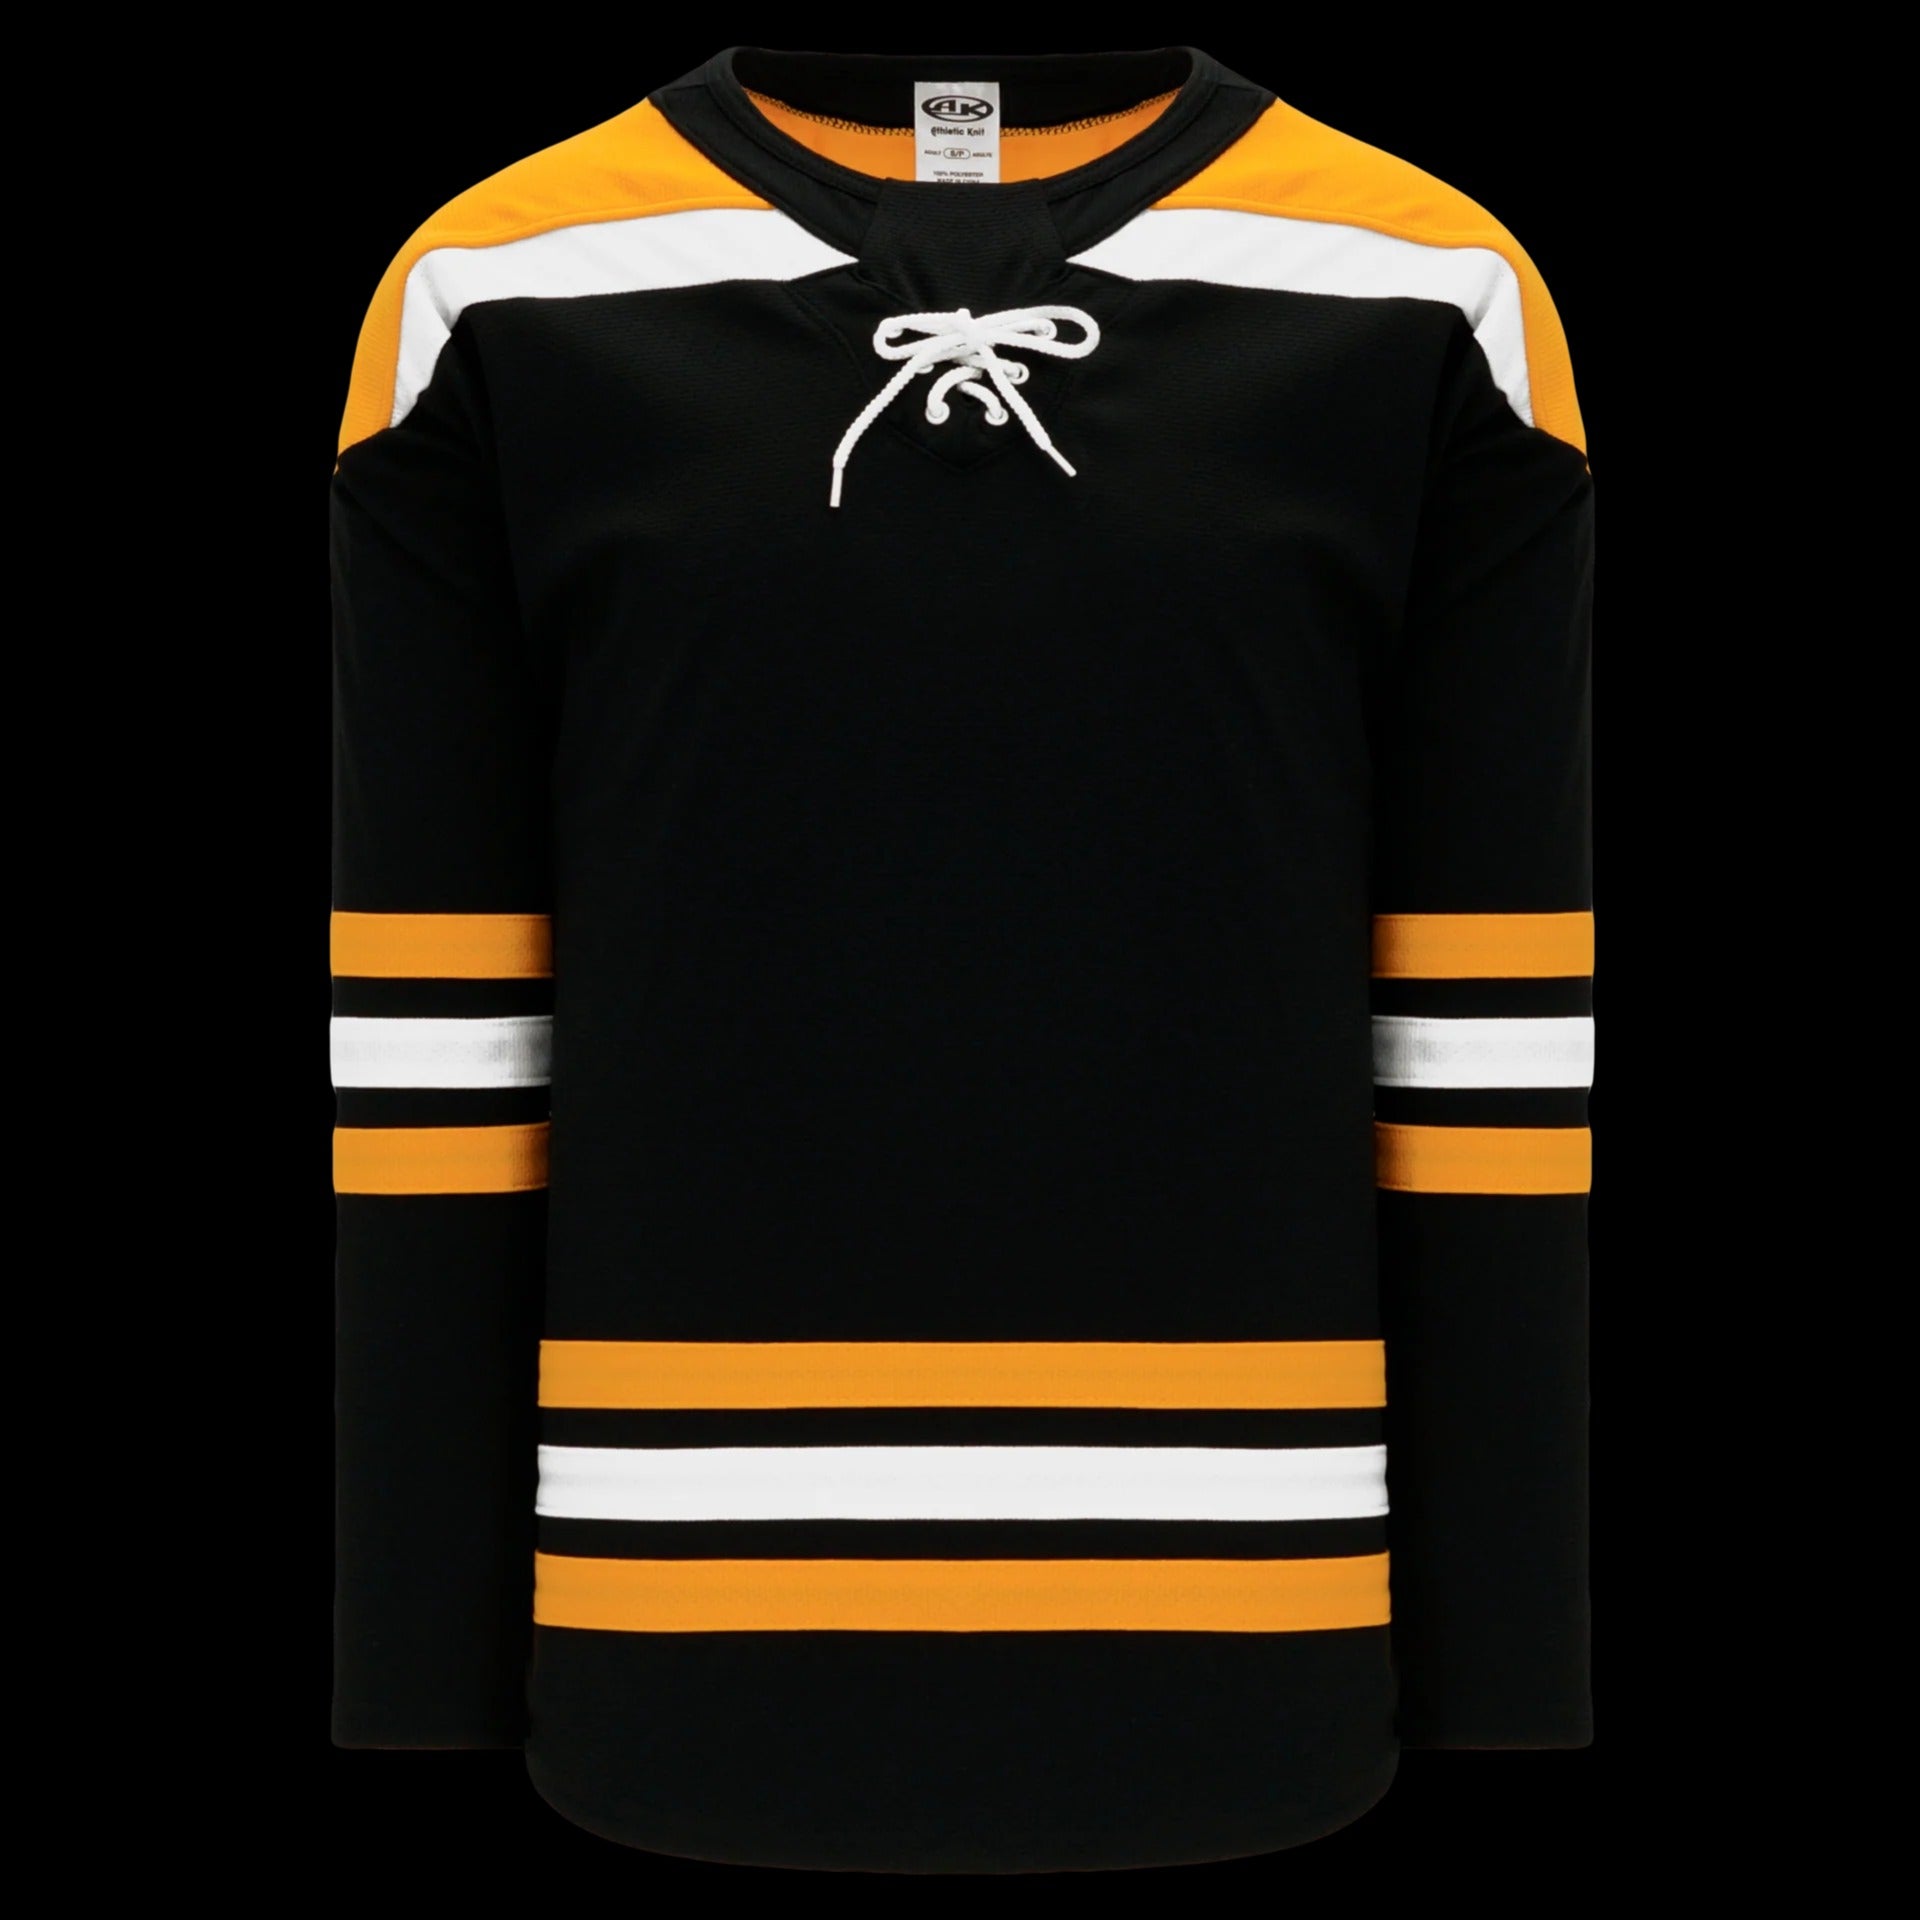 Hockey Jerseys by Athletic Knit - offers blank NHL hockey jerseys